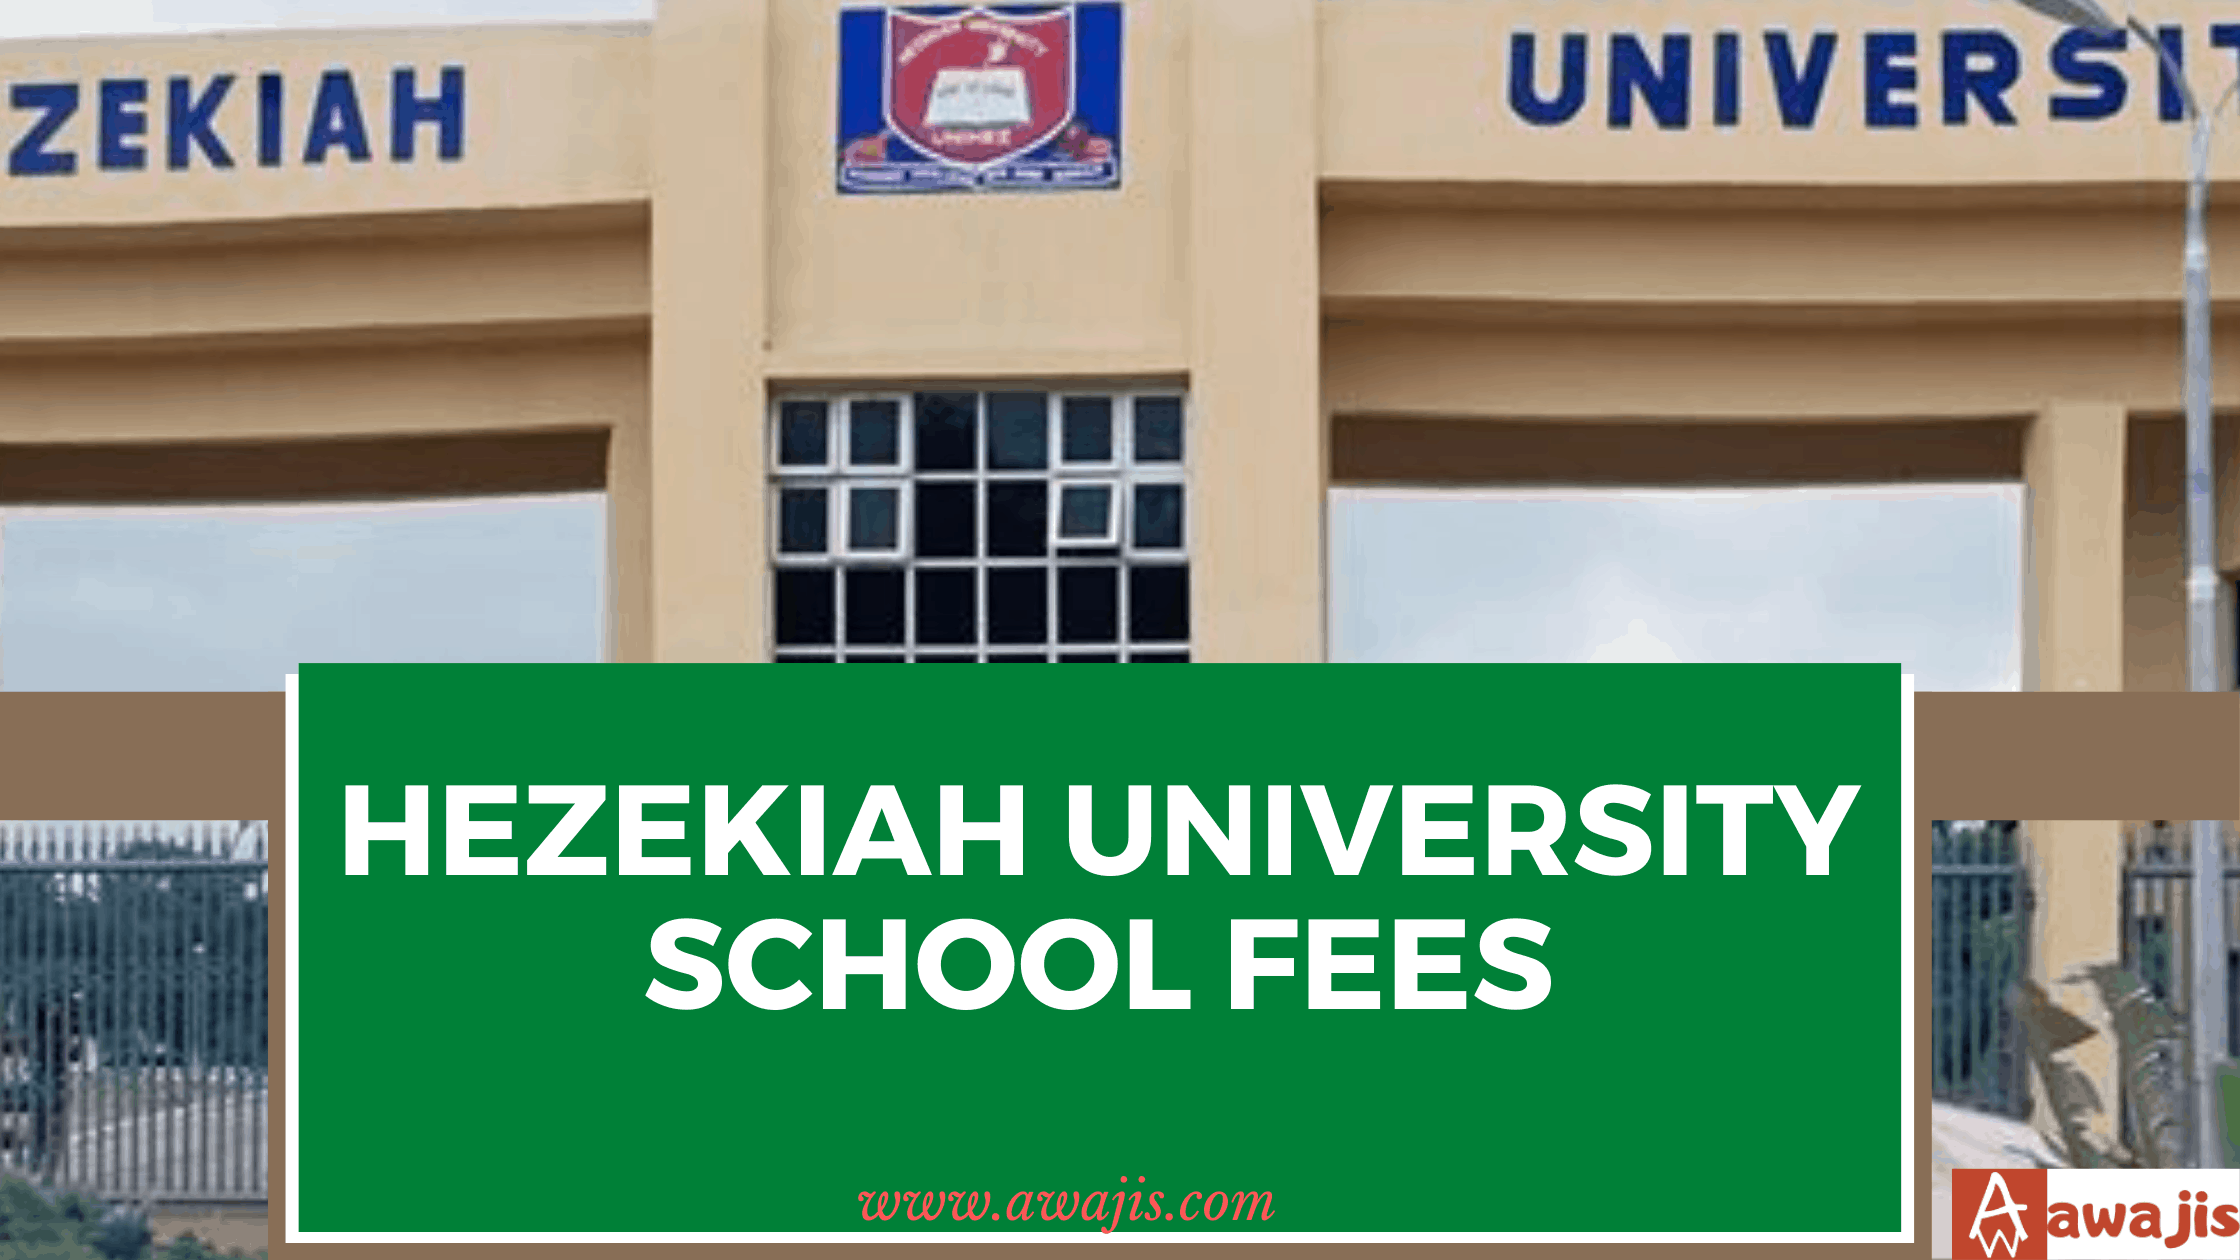 Hezekiah University School Fees.png